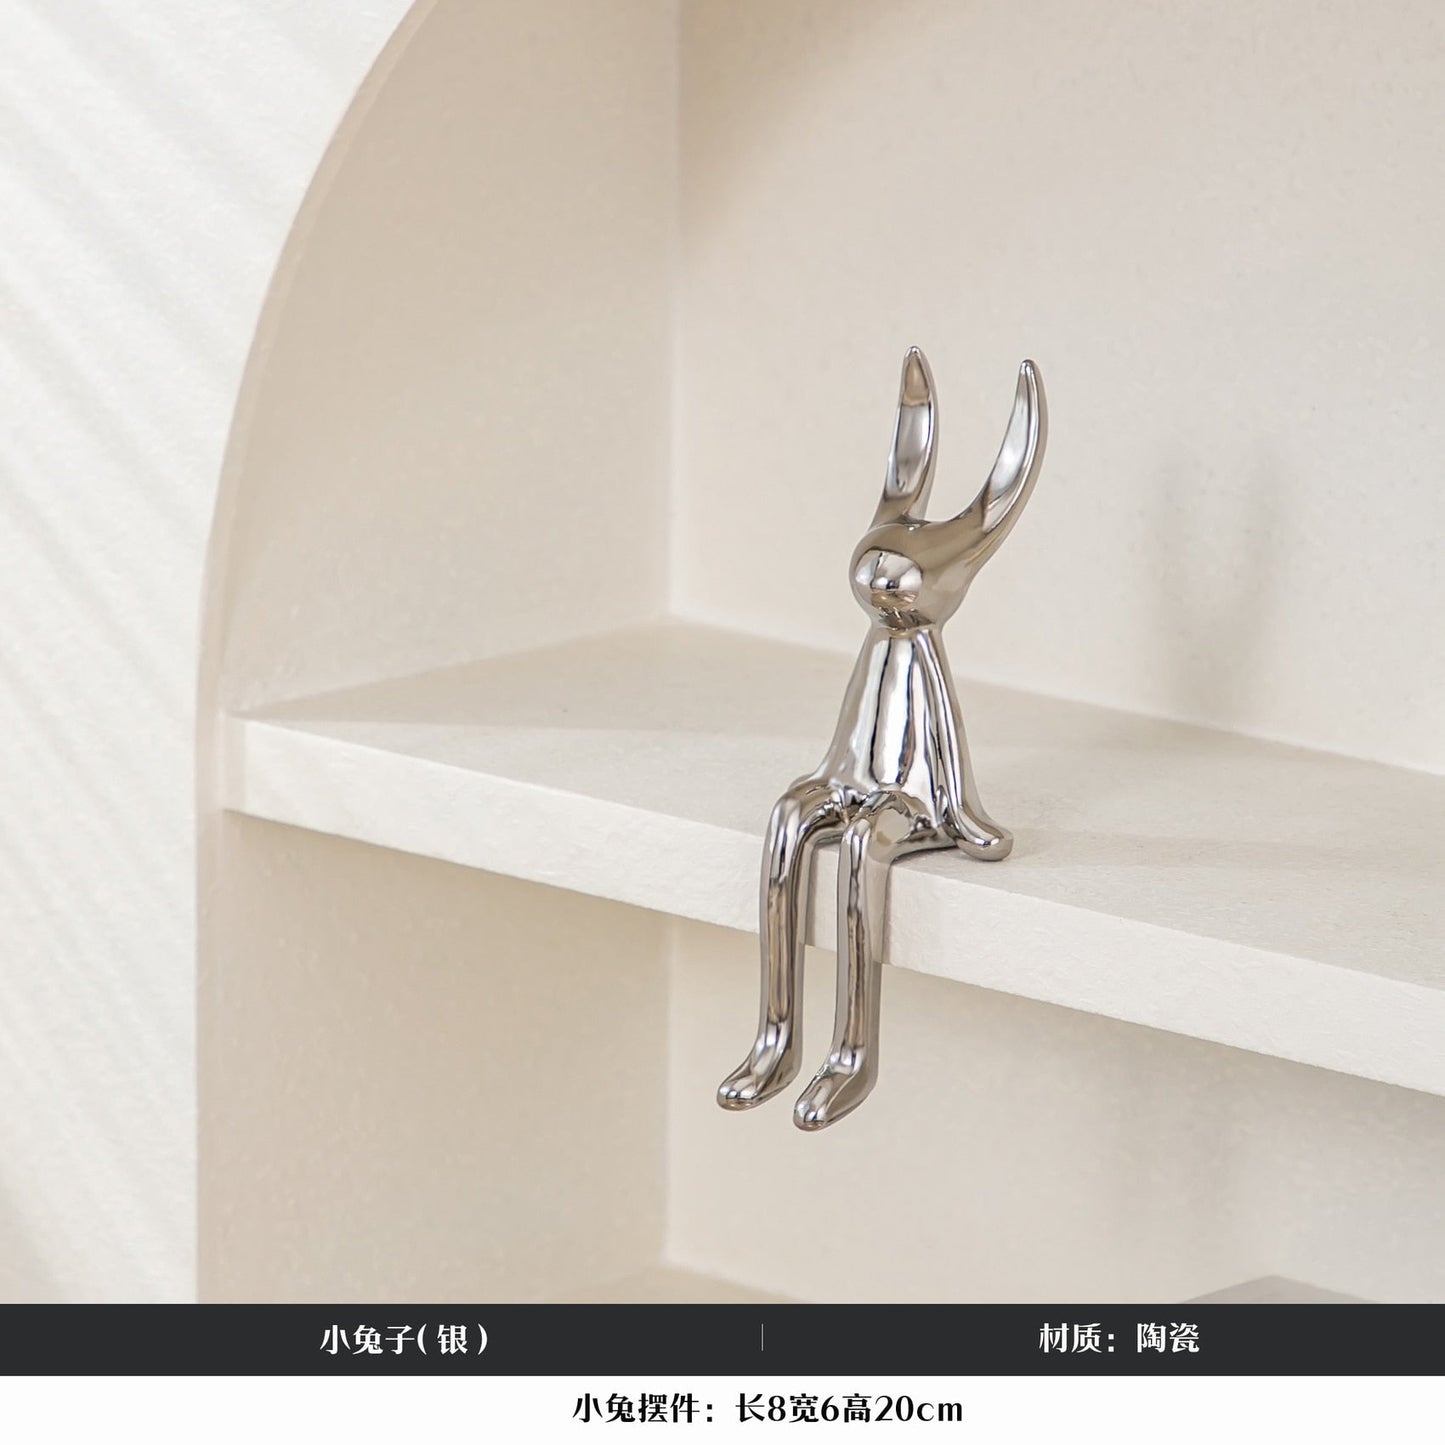 Moderne stijl woonkamer decoratie kawaii konijn beeldhouwkunst keramische gestalte thuis decossories home decor sheld decor